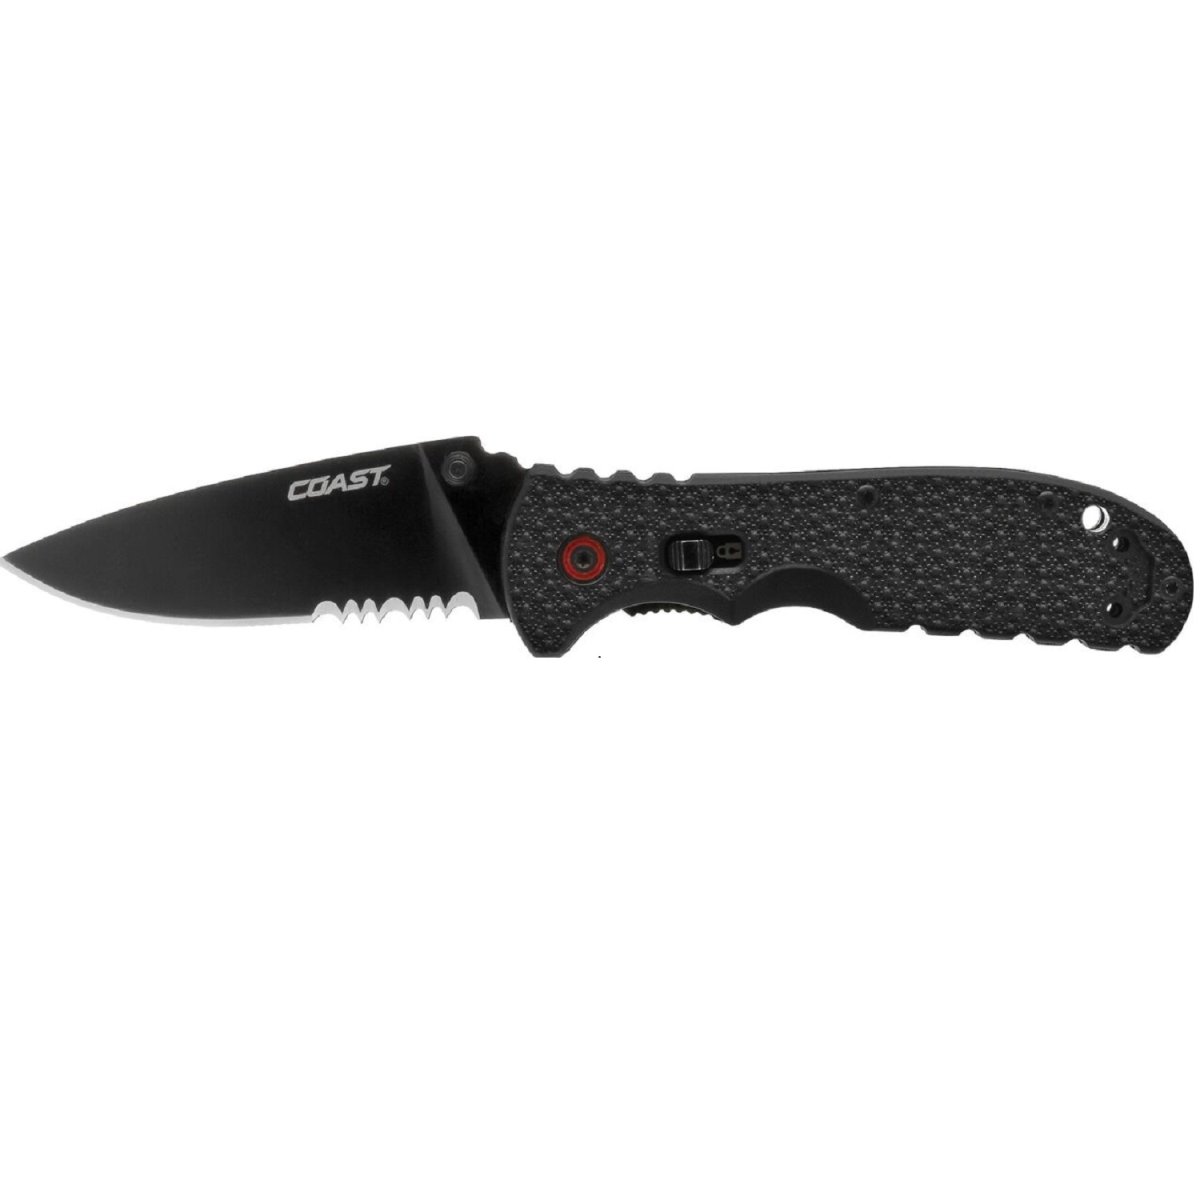 Cos20858 Cutlery Folding Knife Blade - 3 In.